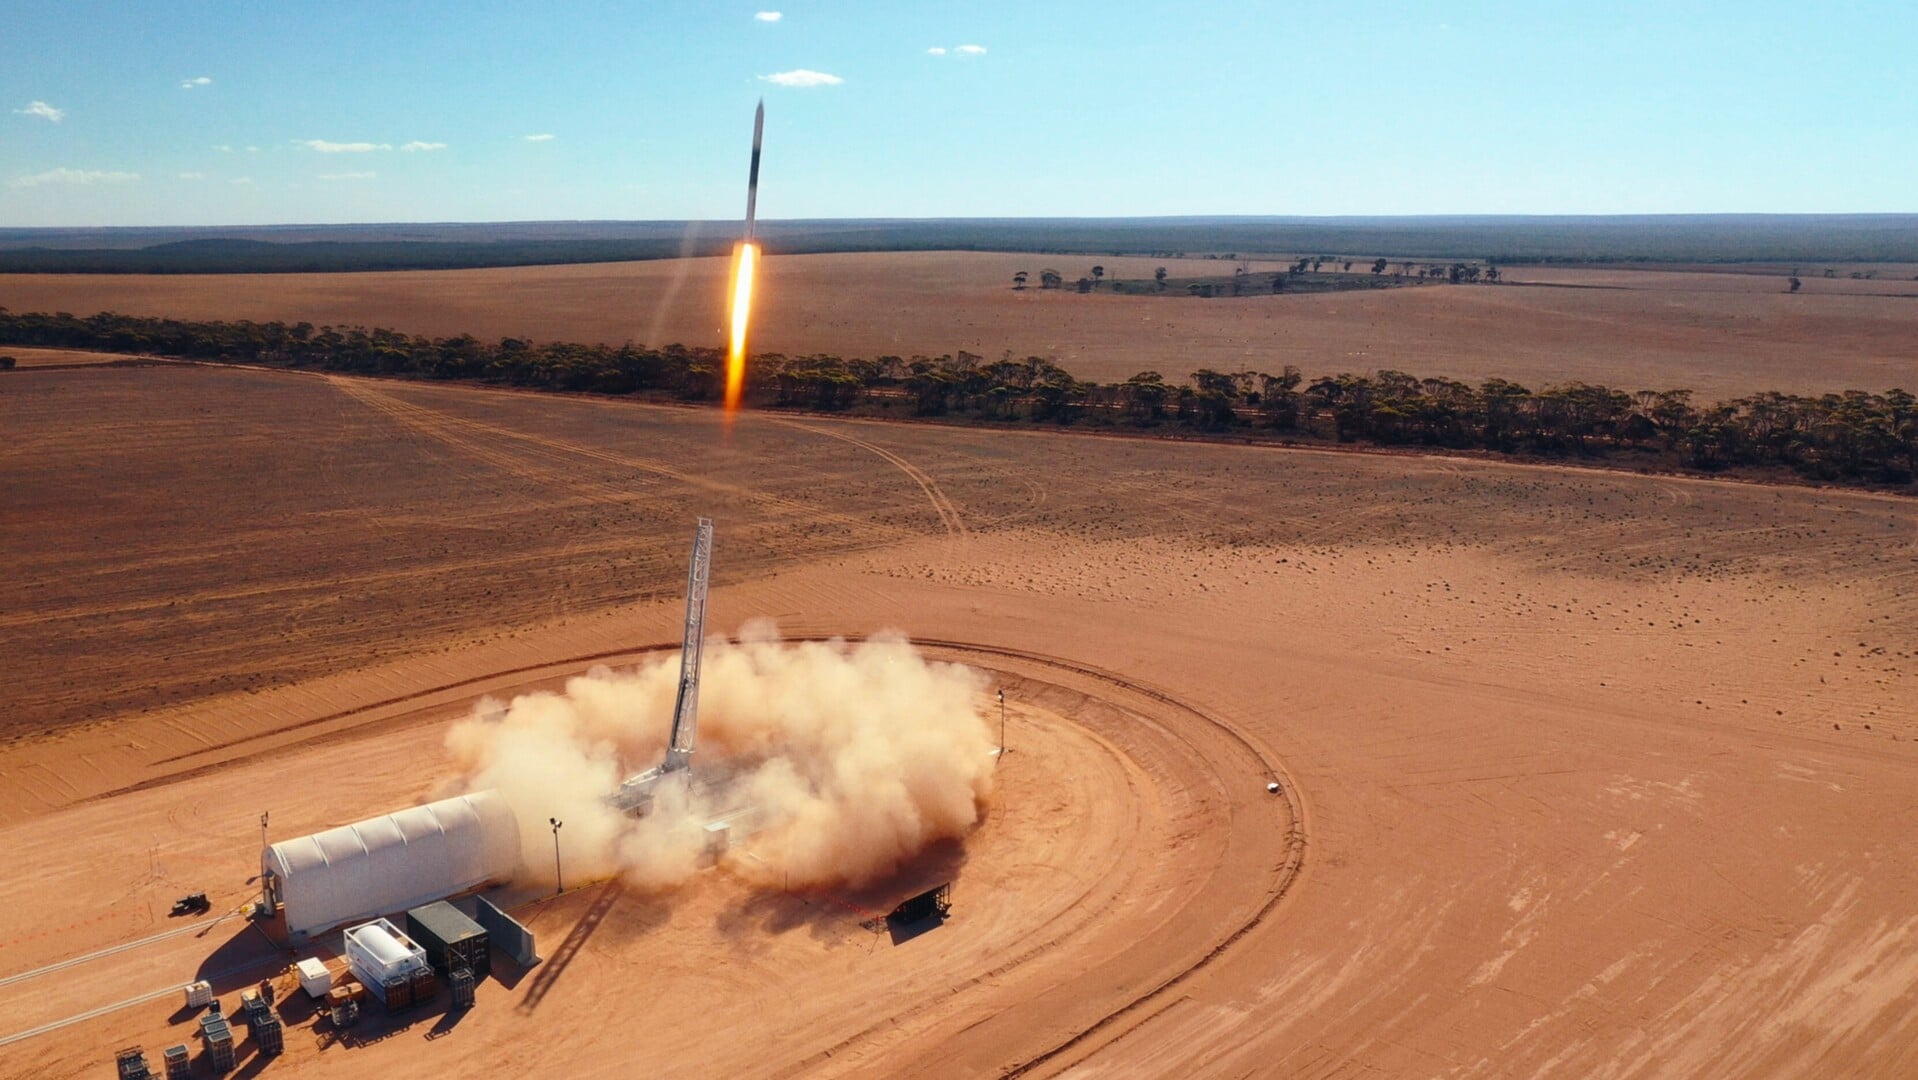 Helt planmæssigt lettede rakennen fredag fra et øde område i Australien. Foto: 